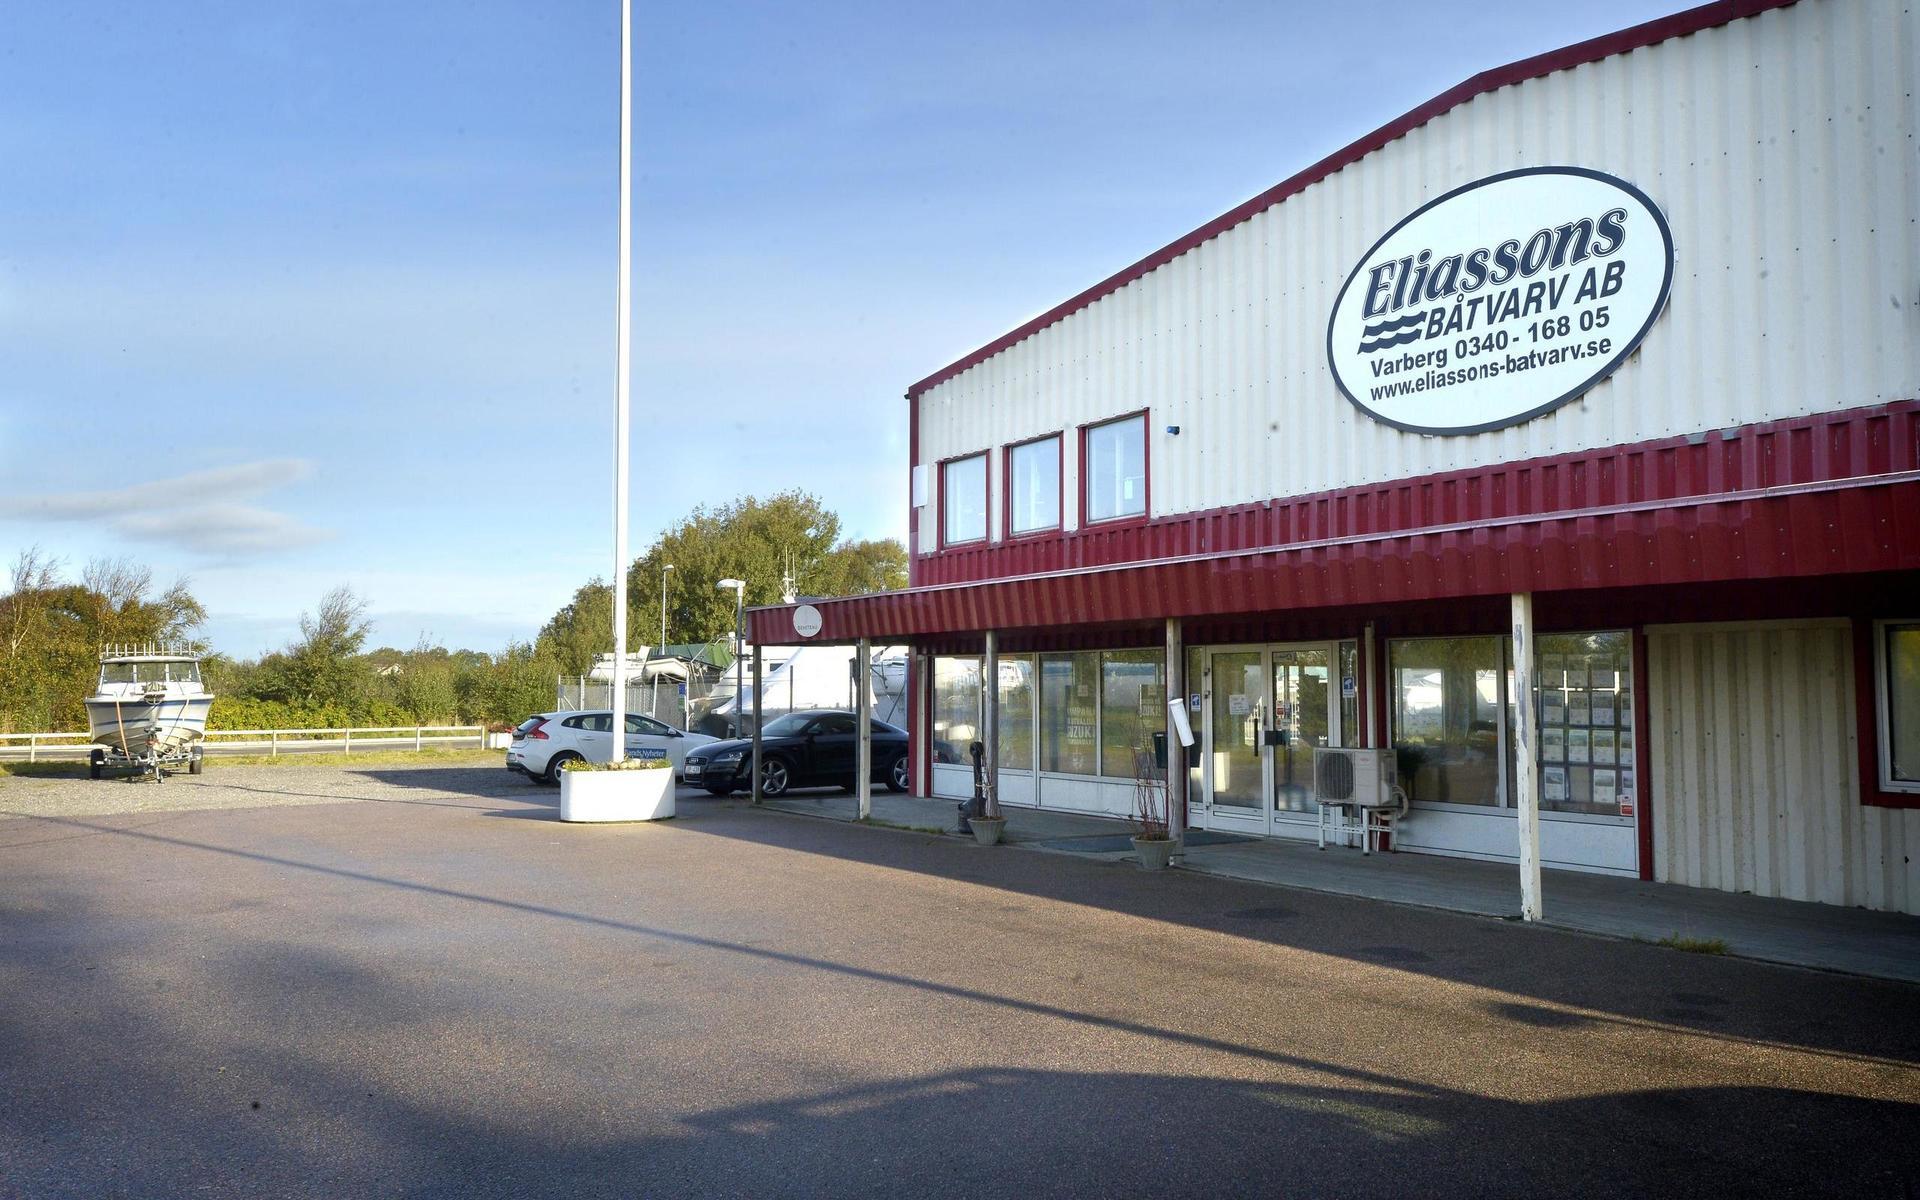 Eliassons har anor från 1914. Det nuvarande bolaget startades 1993 och nuvarande ägare har drivit verksamheten sedan 2007.